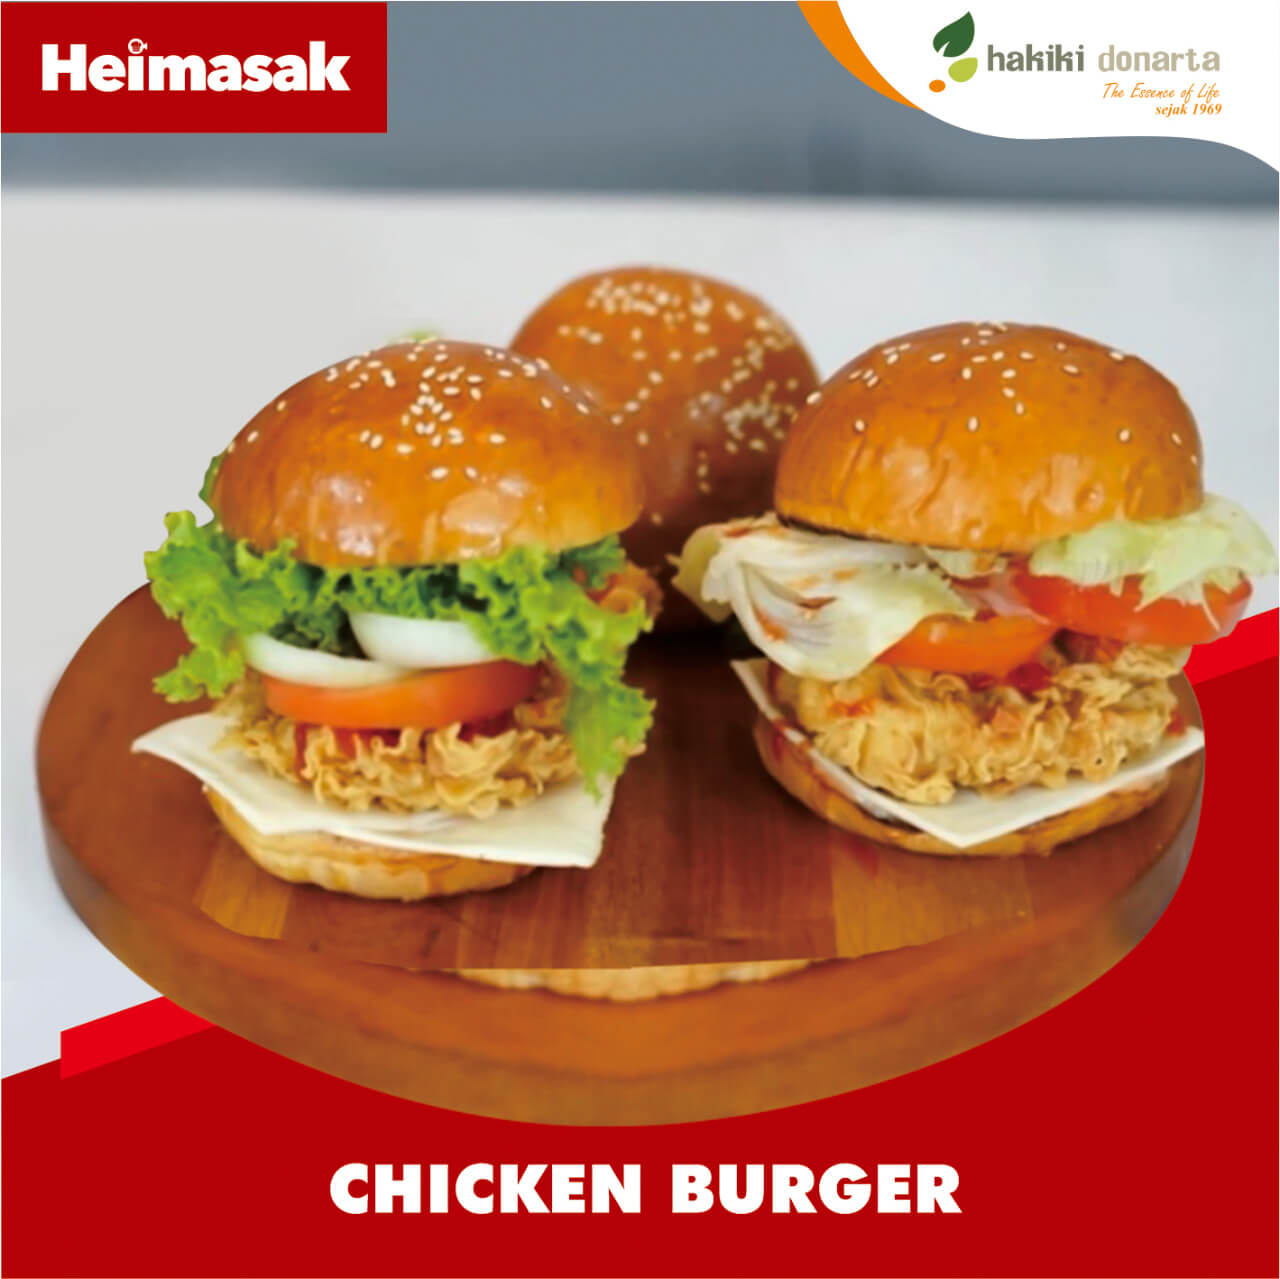 Heimasak – Hakiki Donarta – Chicken Burger